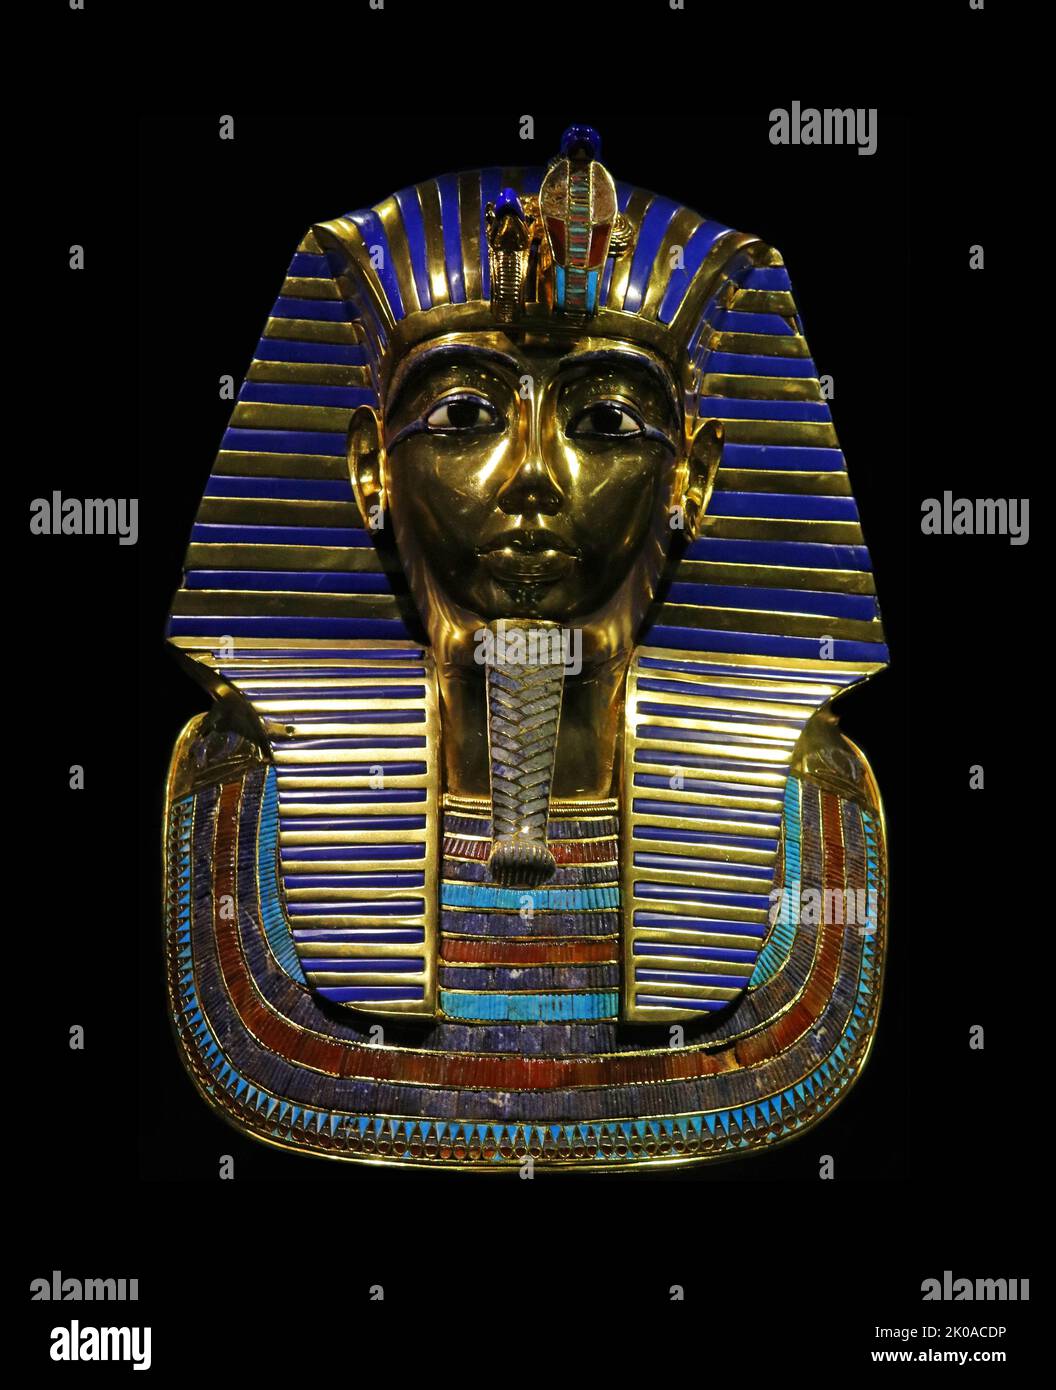 Die Maske von Tutanchamun ist eine goldene Maske des 18.-Dynastie alten ägyptischen Pharao Tutanchamun (regierte 1334-1325 v. Chr.). Sie wurde 1925 von Howard Carter in Grab KV62 im Tal der Könige entdeckt und befindet sich heute im Ägyptischen Museum in Kairo. Die Totenmaske ist eines der bekanntesten Kunstwerke der Welt und ein prominentes Symbol des alten Ägypten Stockfoto